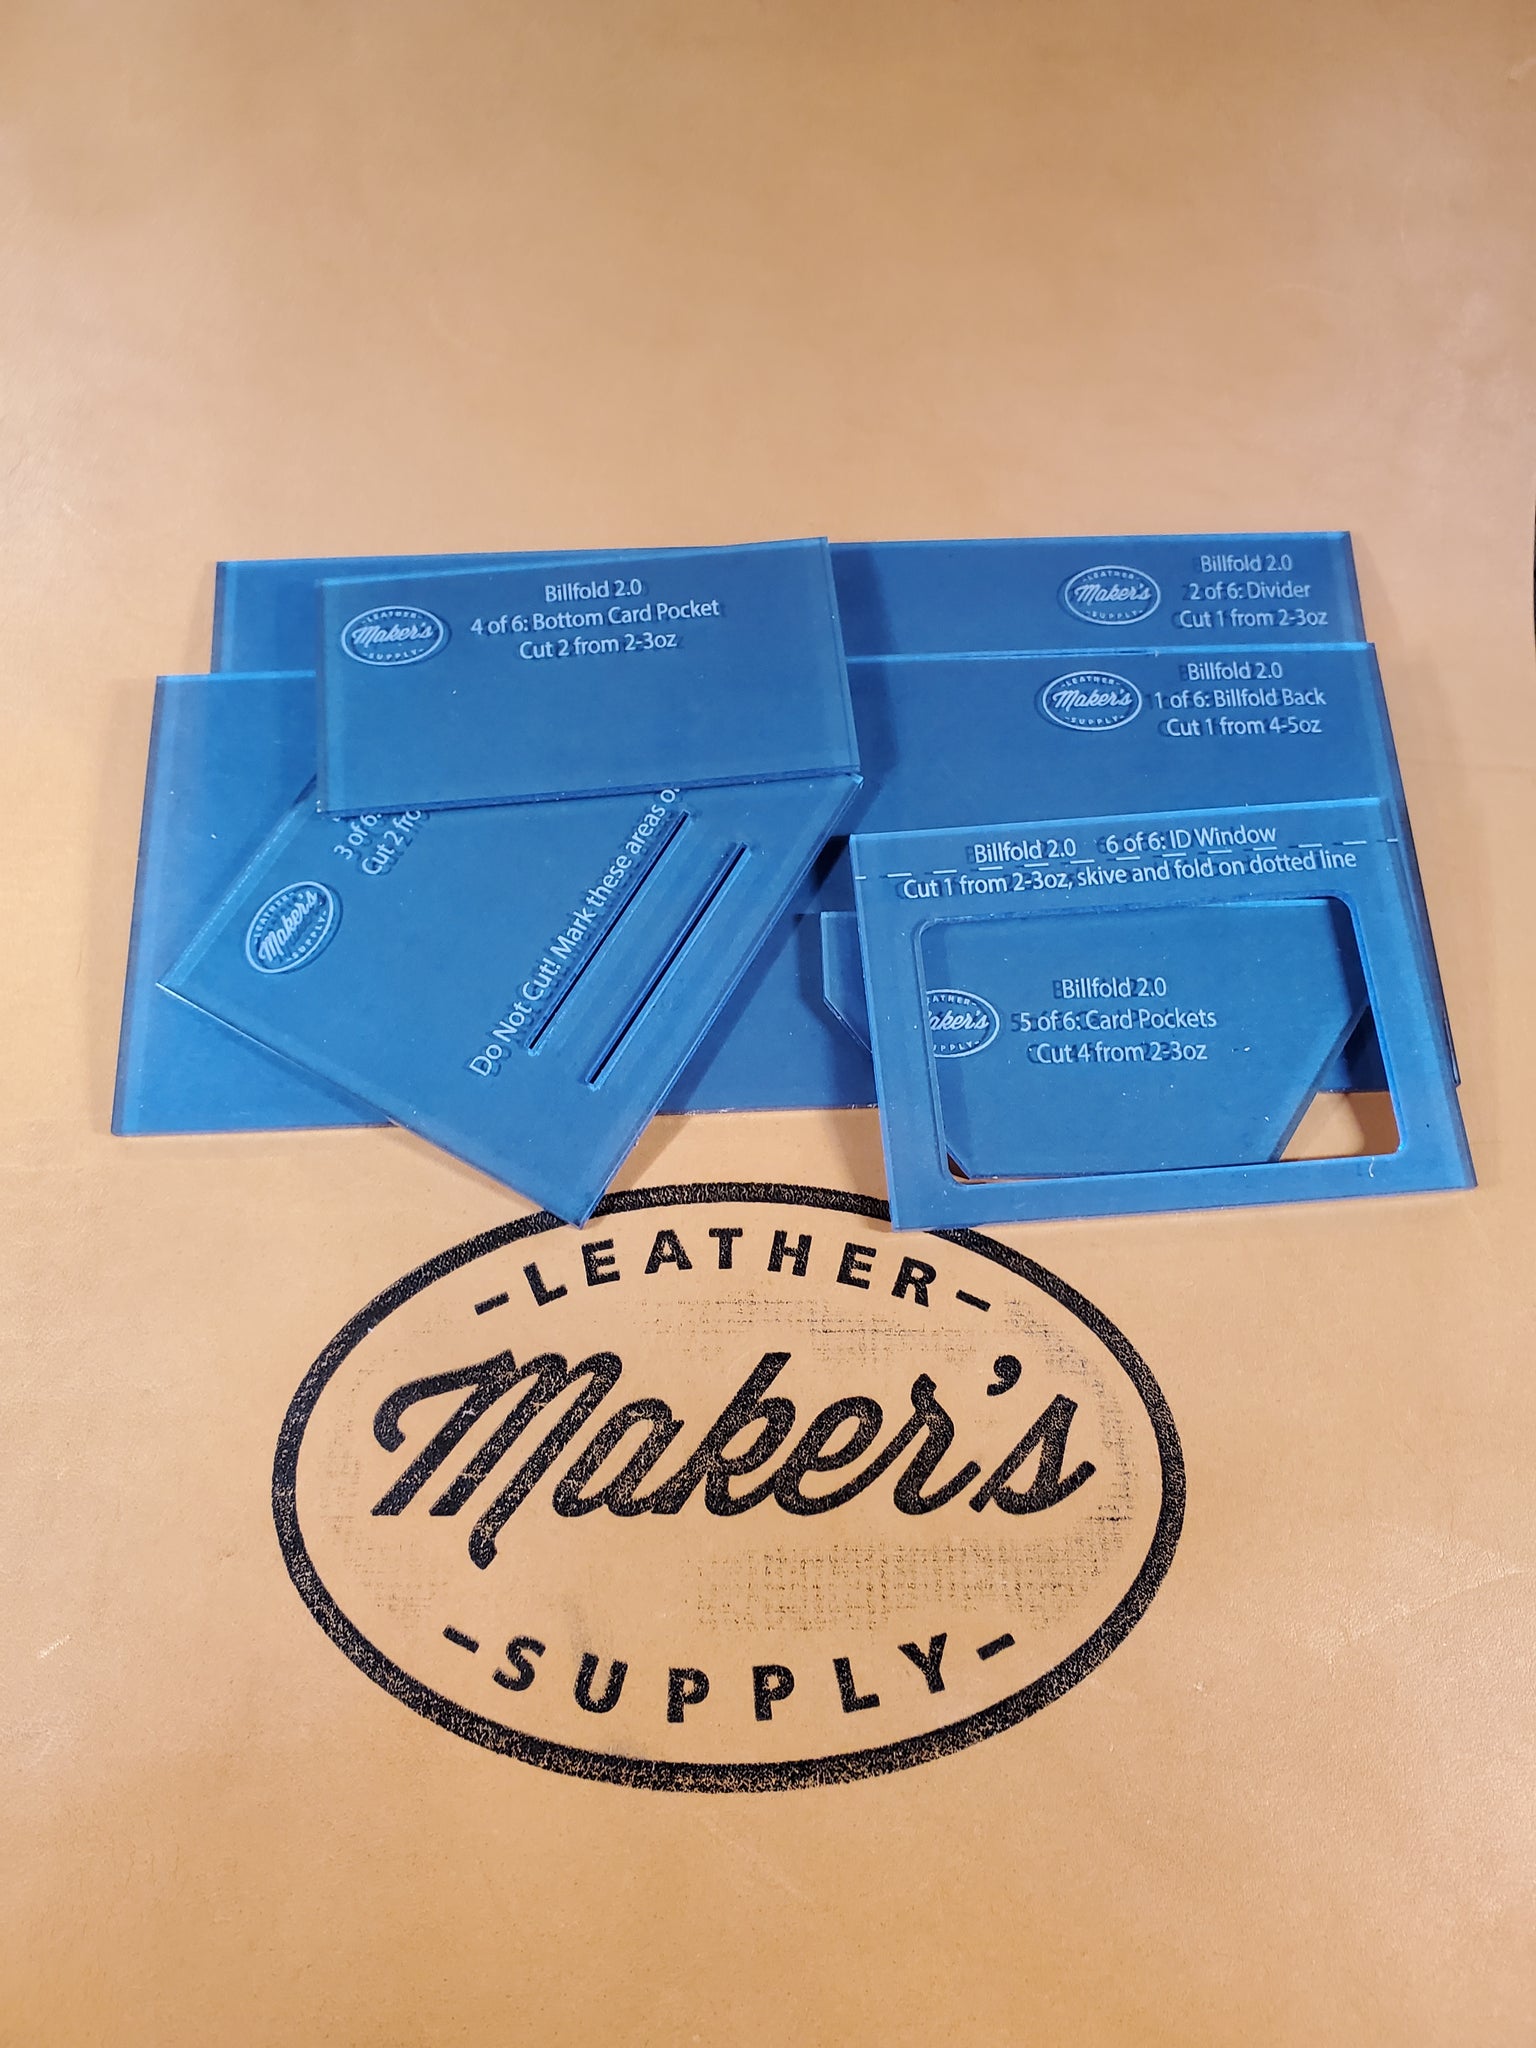 MCM Mens Black Leather Summer Green Splash LogoBifold Billfold Wallet –  Design Her Boutique